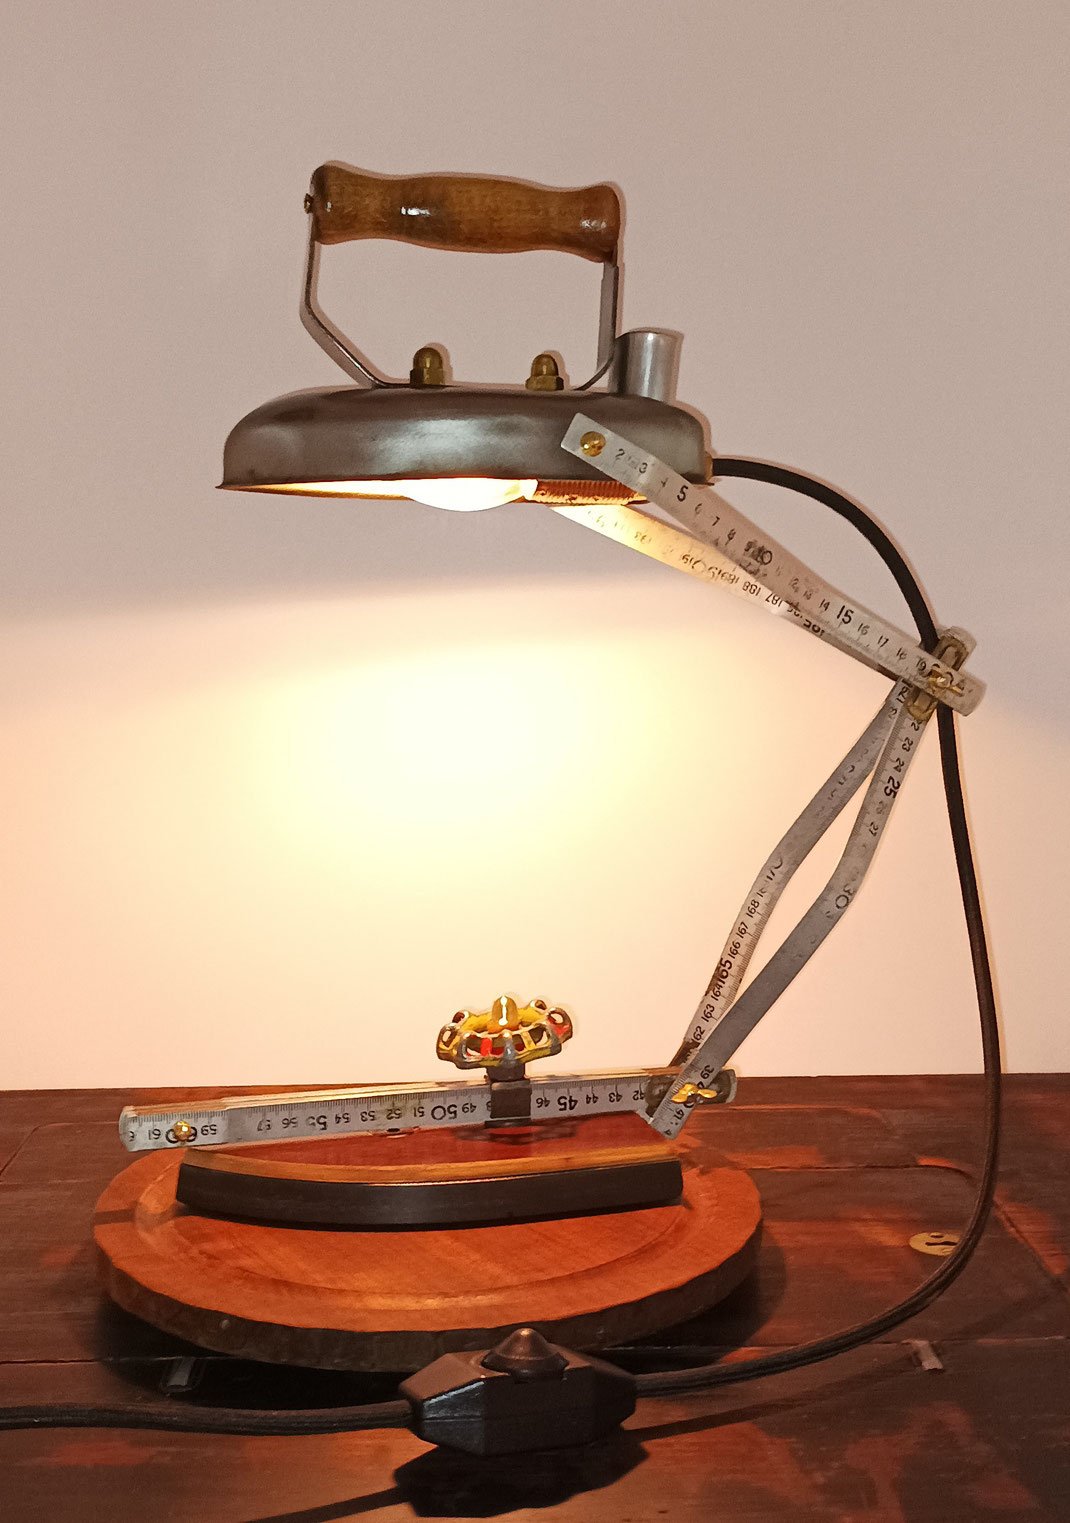 Eine Tischlampe aus einem alten Bügeleisen. Das Bügeleisen wurde zerlegt, die Heizplatte ist jetzt der Lampenfuß, und das Oberteil der Lampenschirm. Für den Lampenarm wurde ein alter Metallzollstock verwendet.